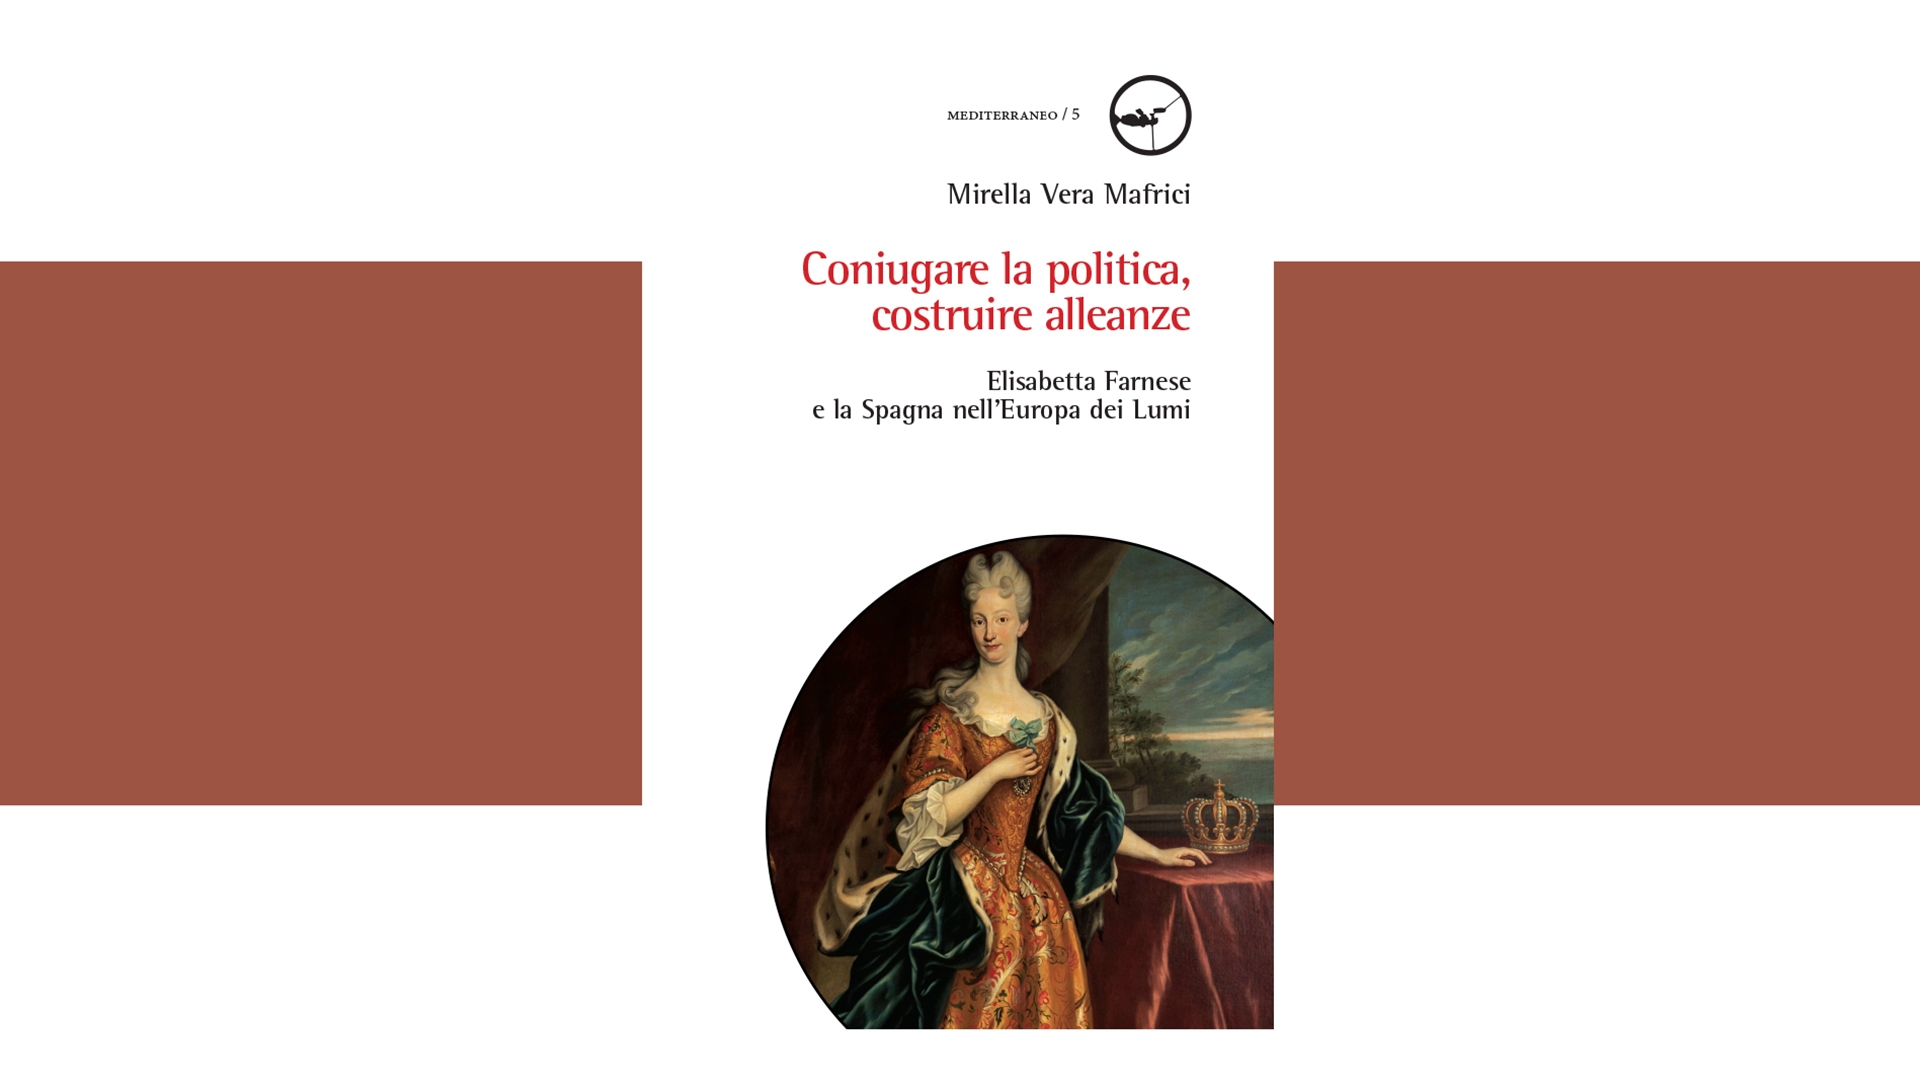 Elisabetta Farnese, una regina italiana nella grande politica europea